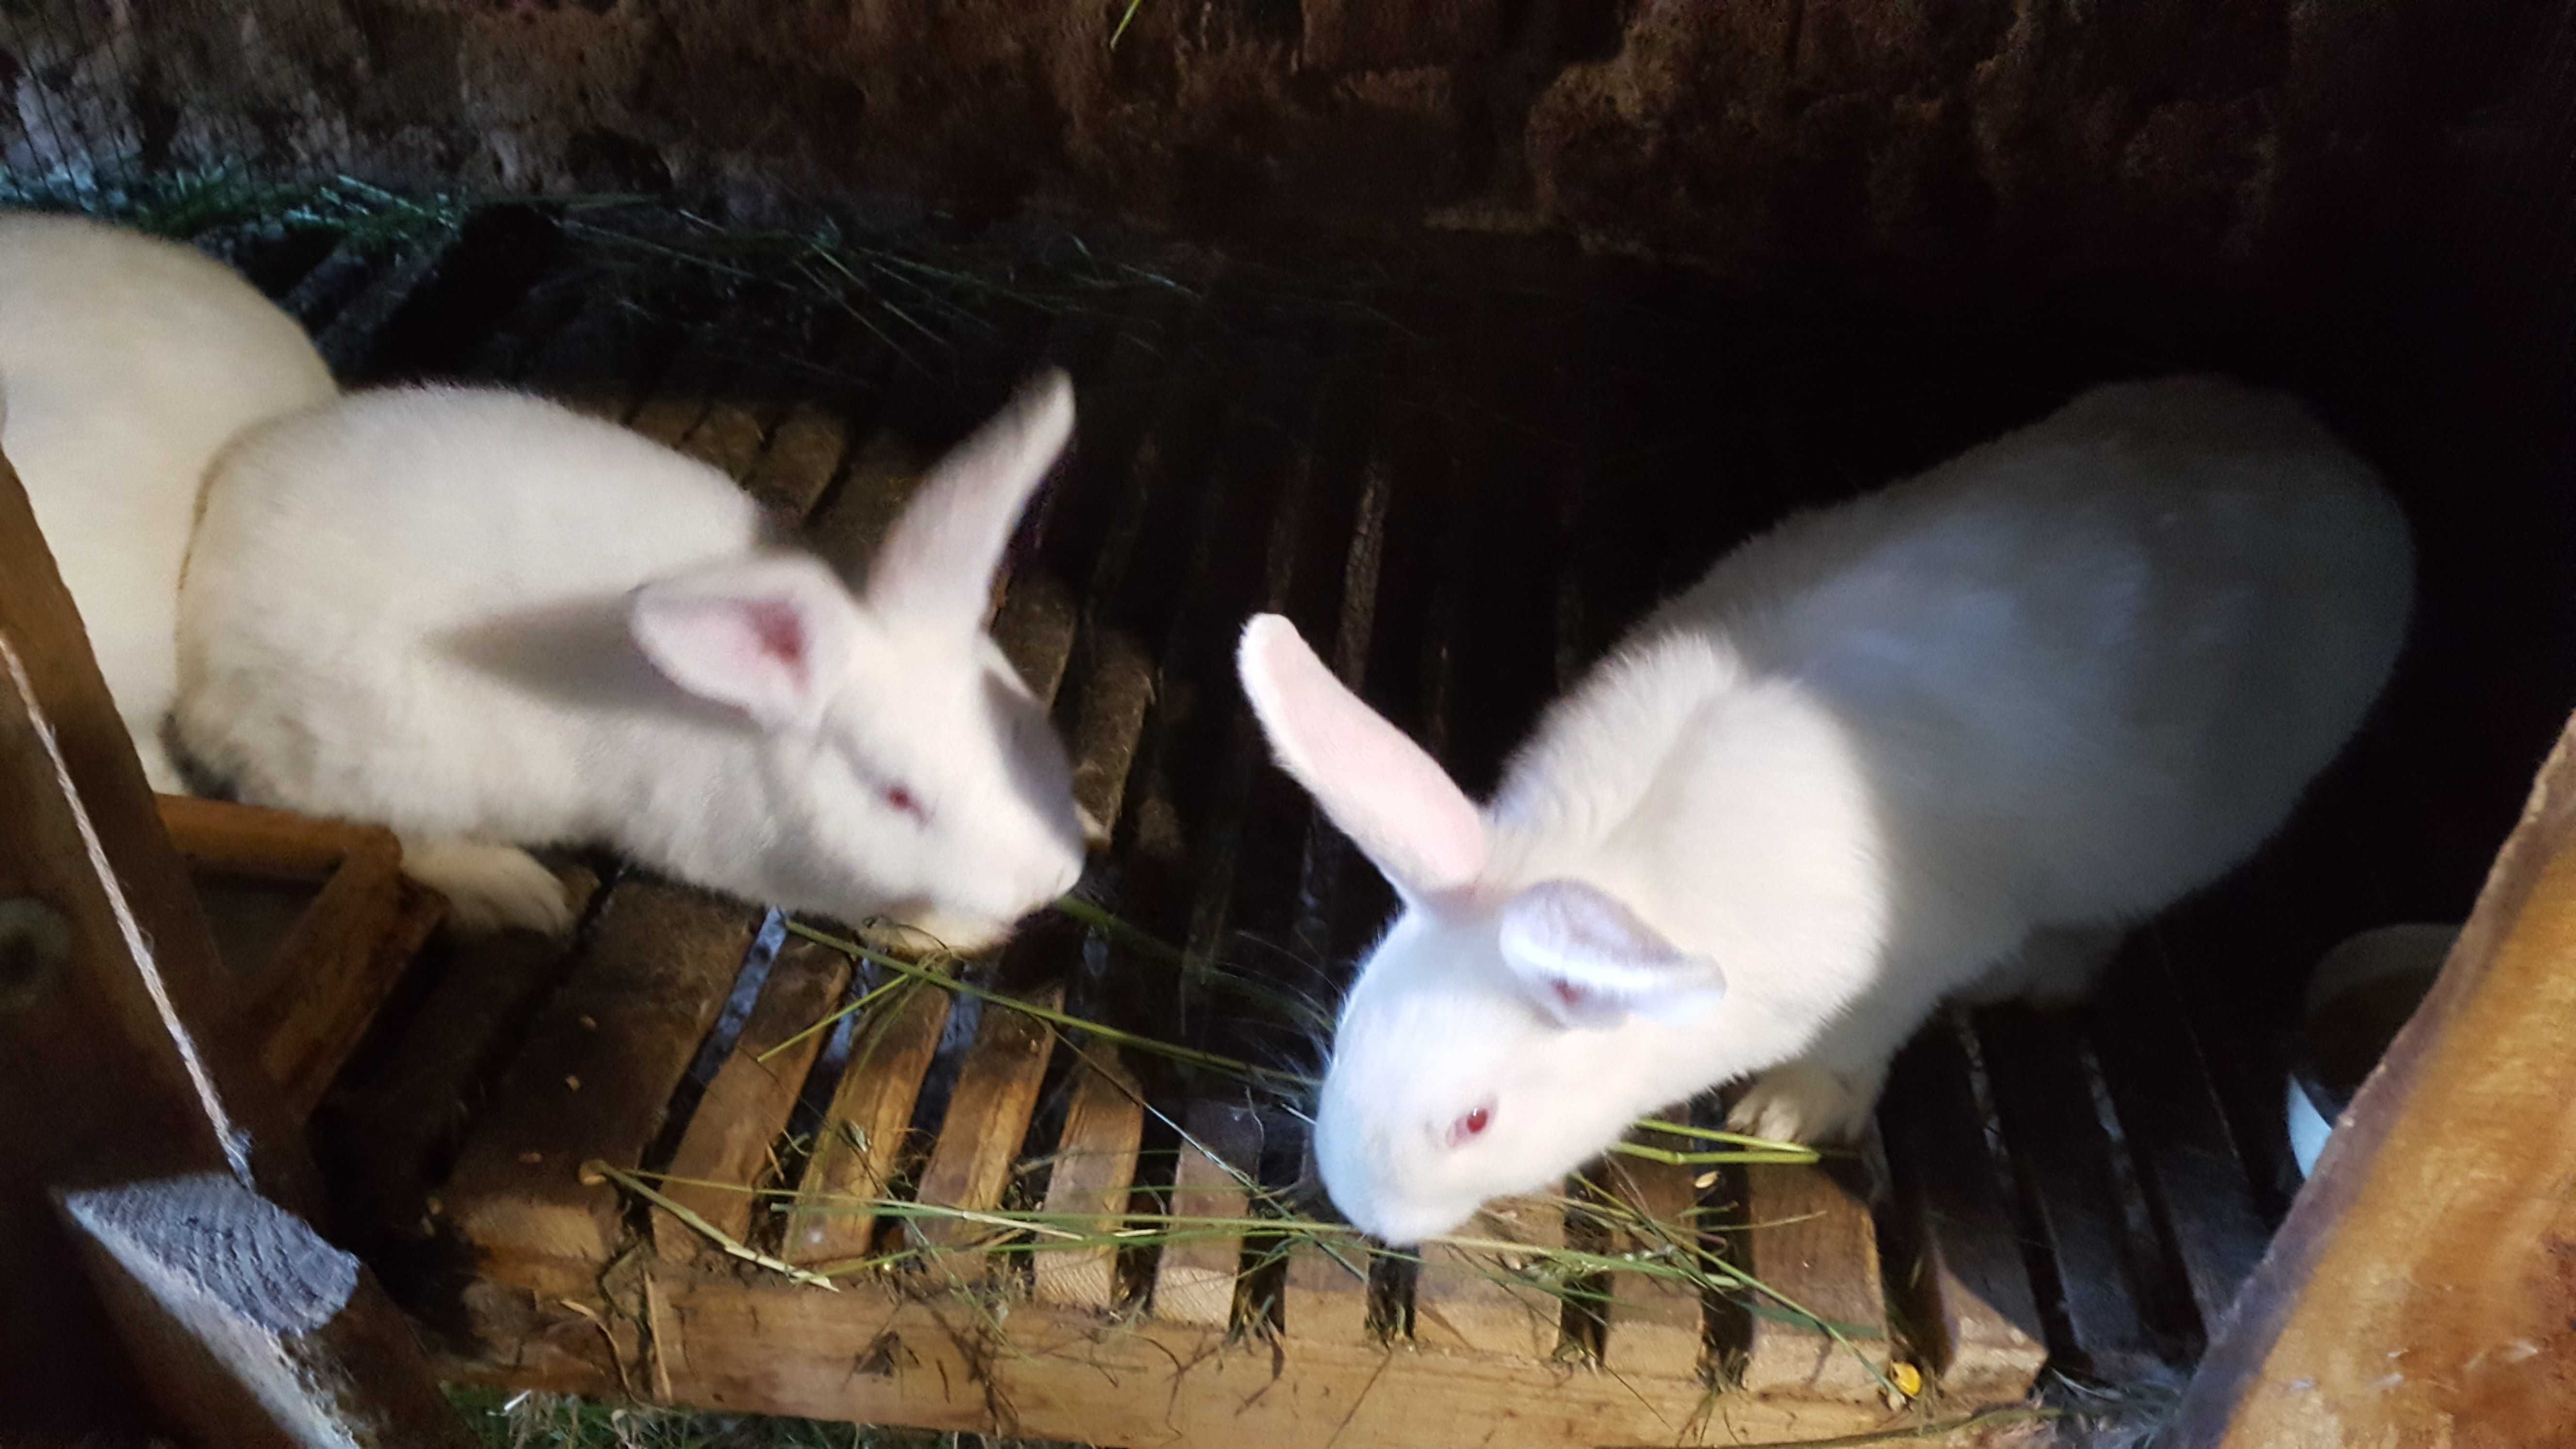 Tuszki z królika oraz żywe króliki